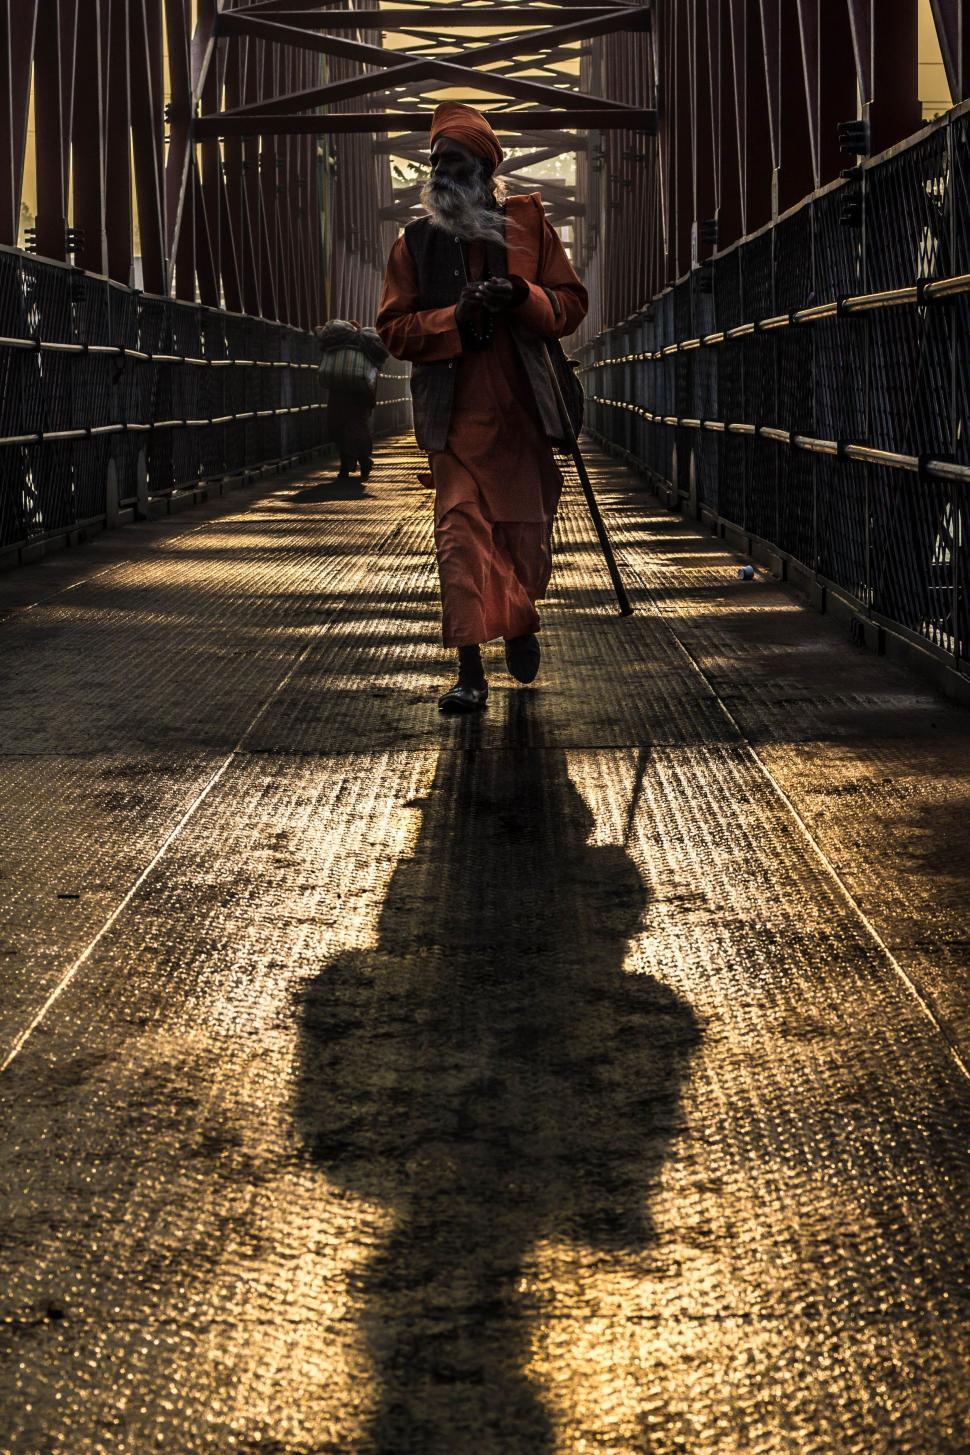 Free Image of Man Walking Across Bridge With Long Stick 